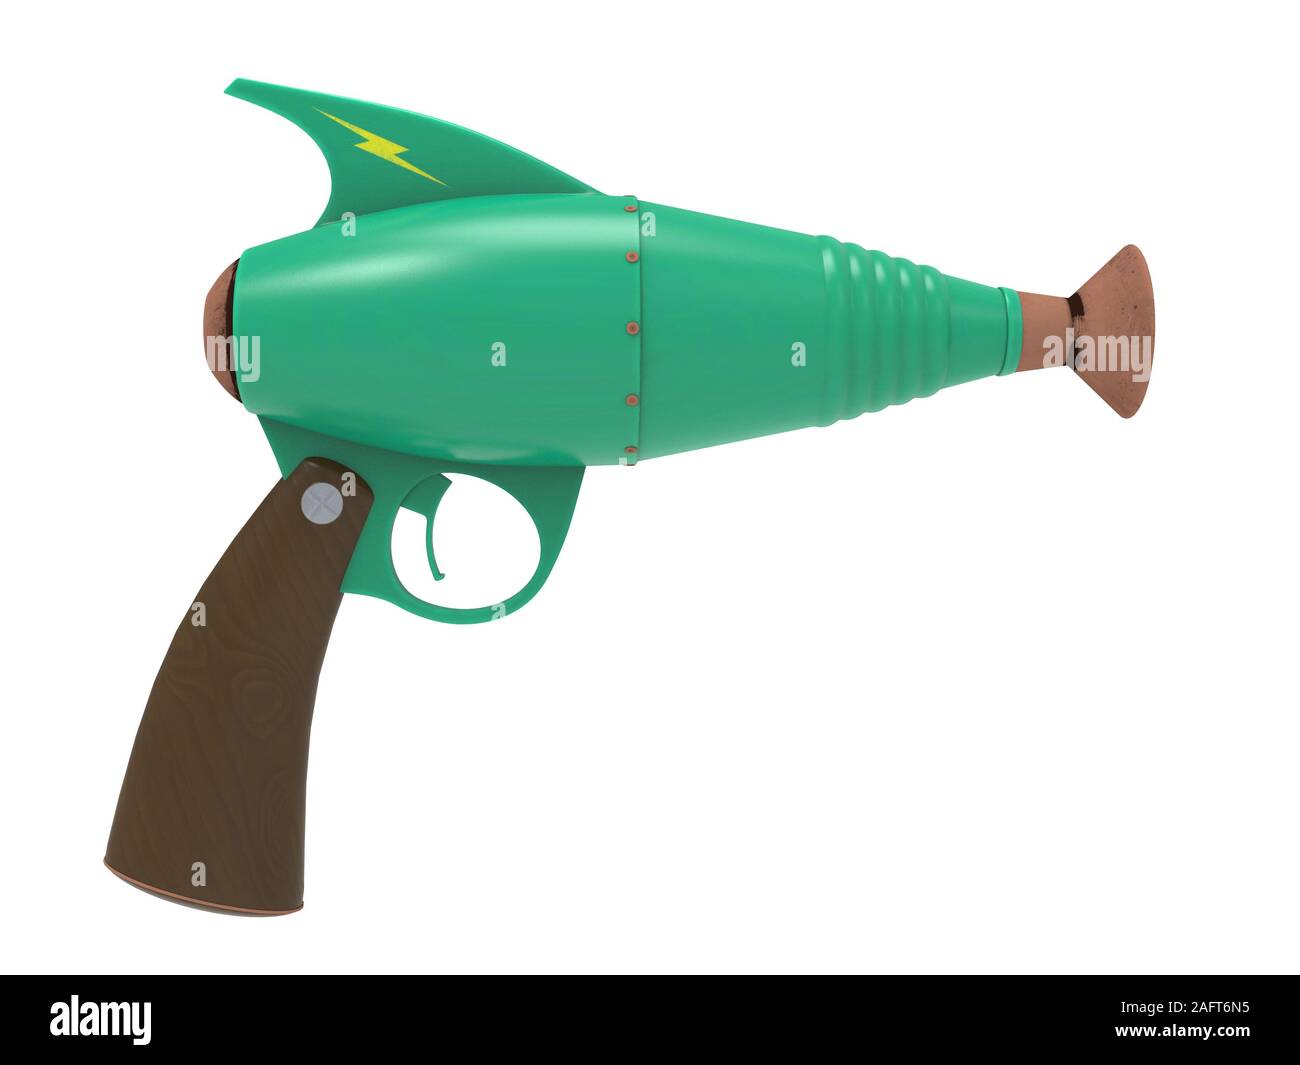 Spielzeug Ray Gun auf soliden Hintergrund Blaster Pistole Laser retro Waffe  Render 3D-Darstellung Stockfotografie - Alamy